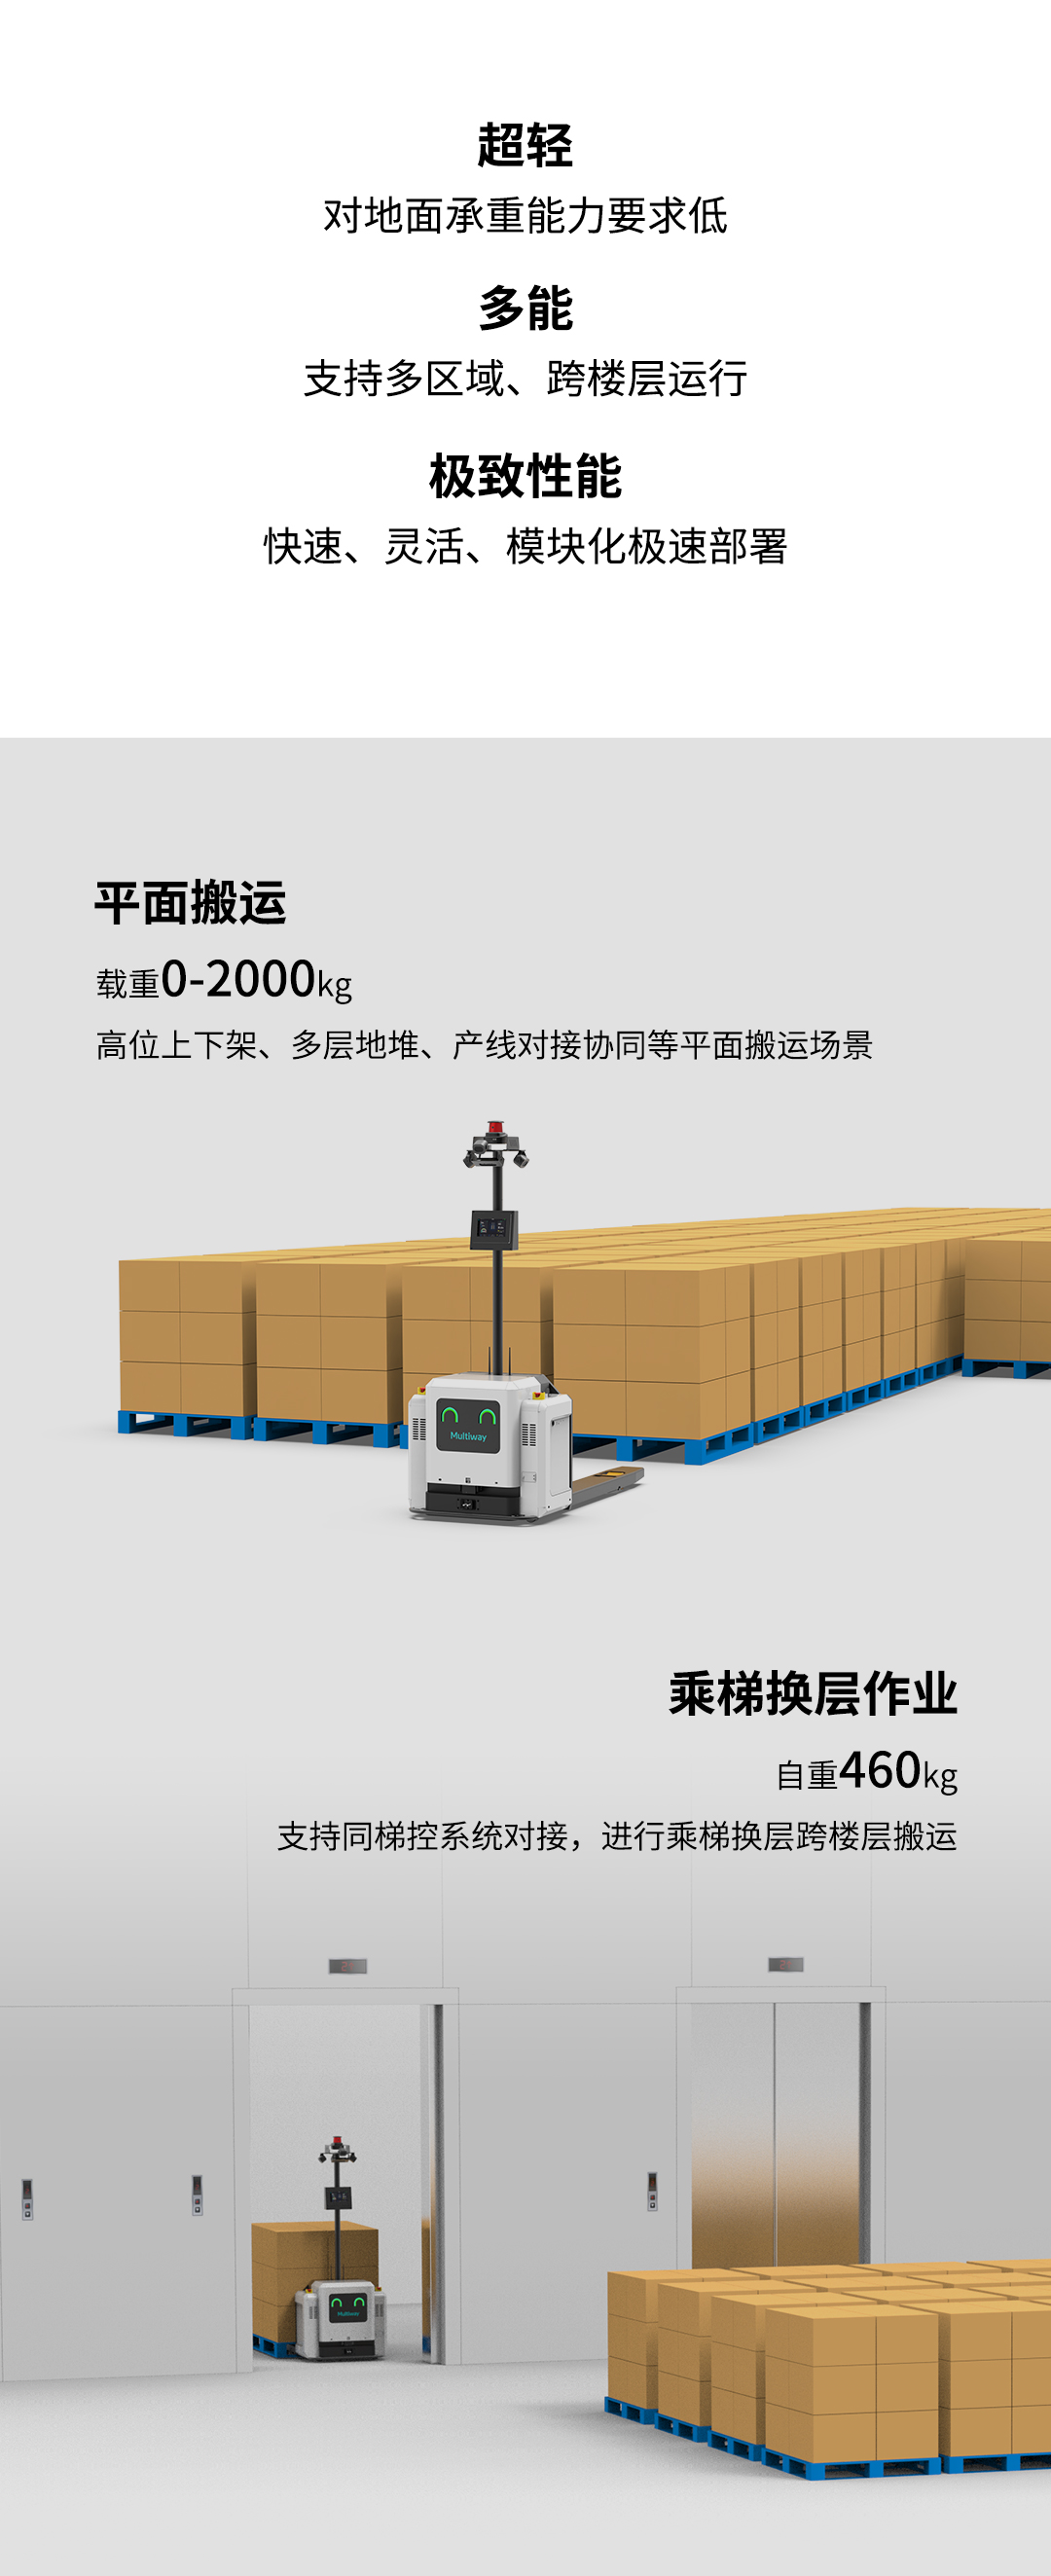 劢微机器人公司微蜂X20助力纺织工厂智能化升级3